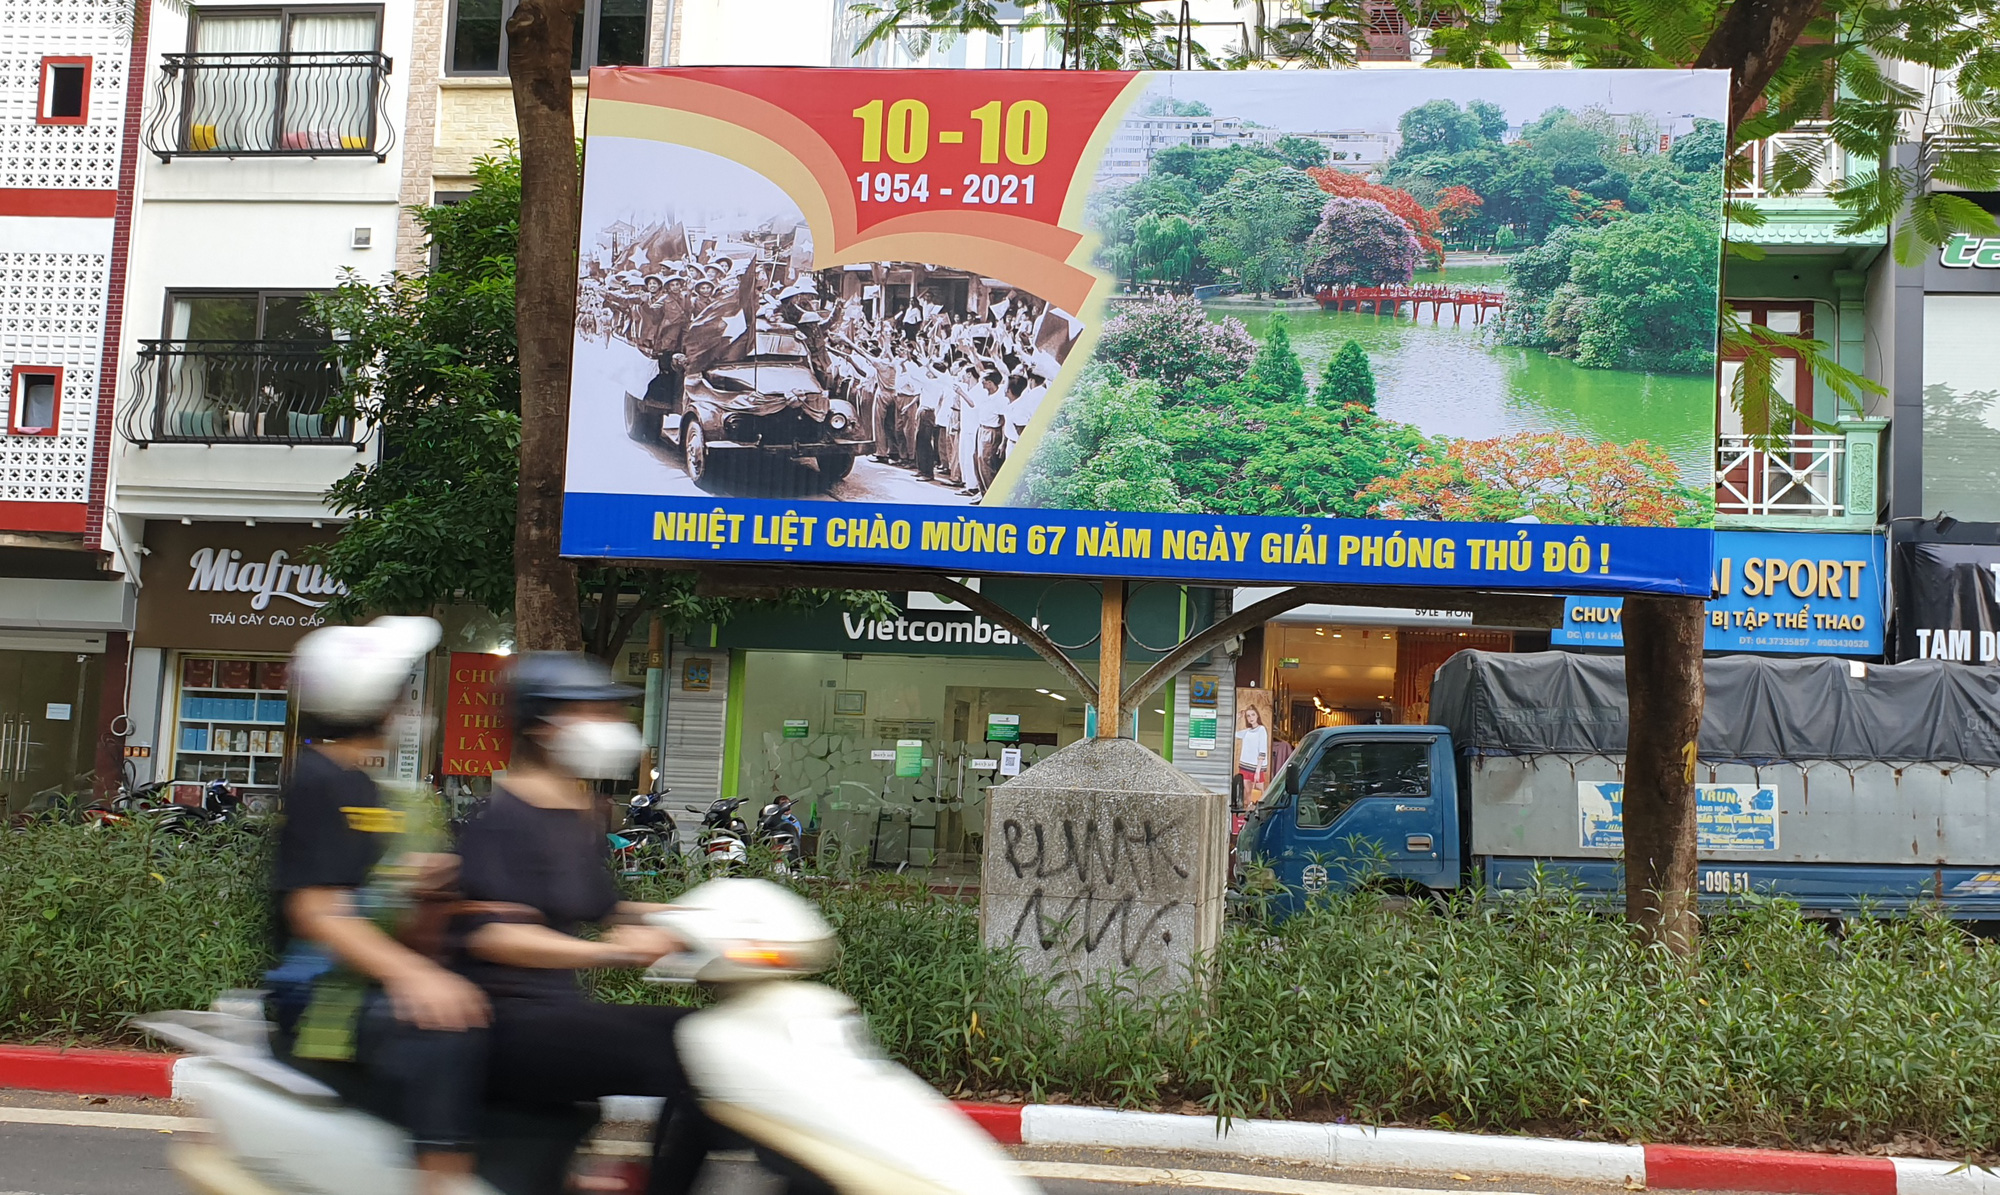 Đường phố Hà Nội rực rỡ chào mừng Kỷ niệm 67 năm Ngày Giải phóng Thủ đô - Ảnh 11.